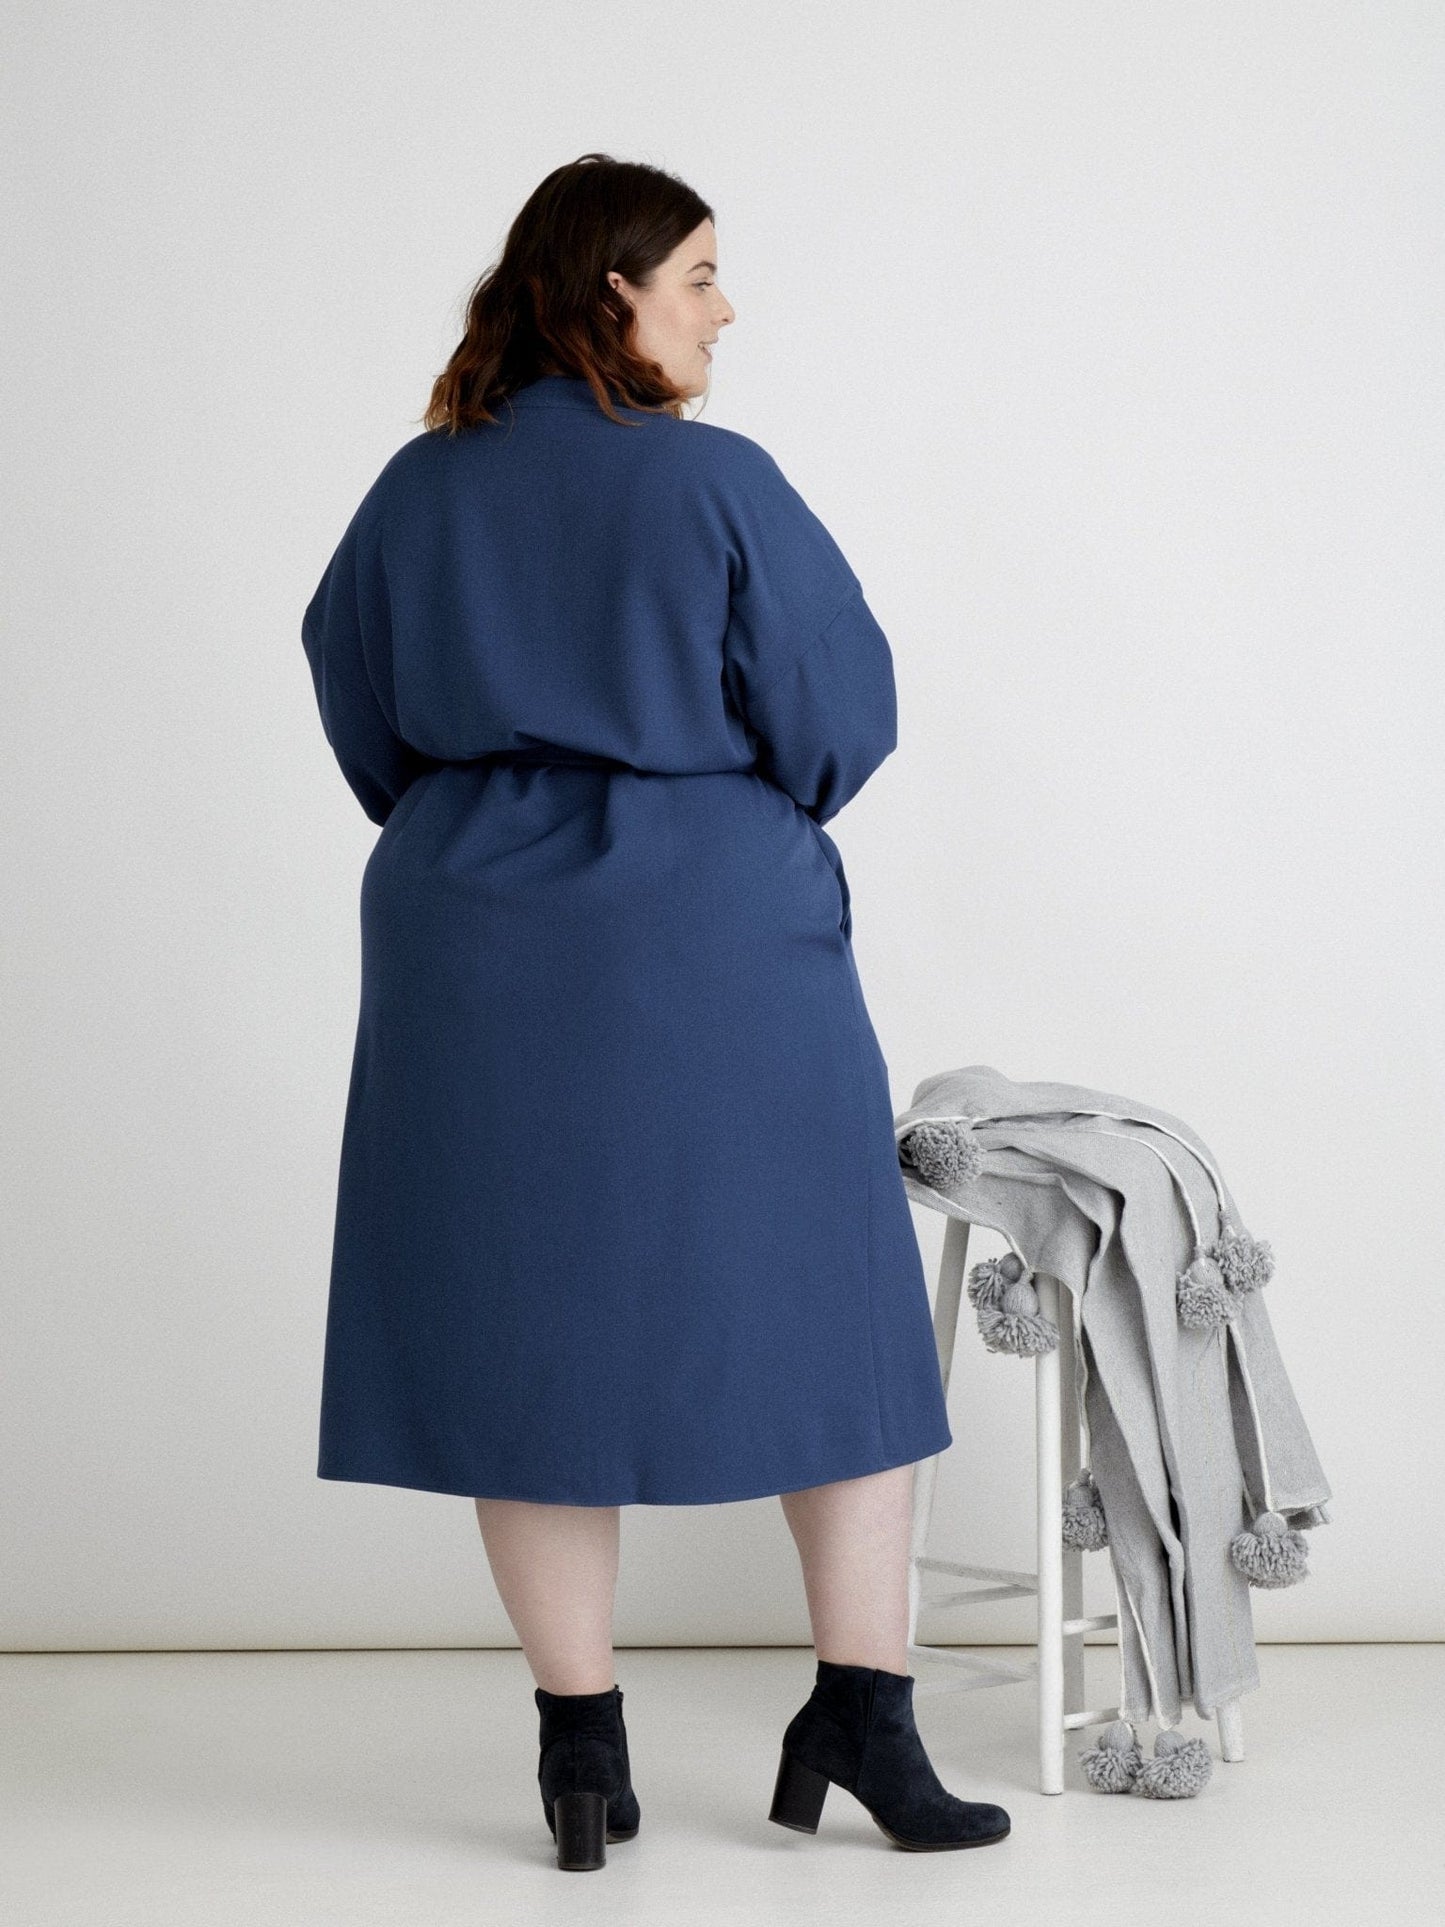 Les Militantes - robe bleu grande taille Méganne chic, tendance et de qualité made in France